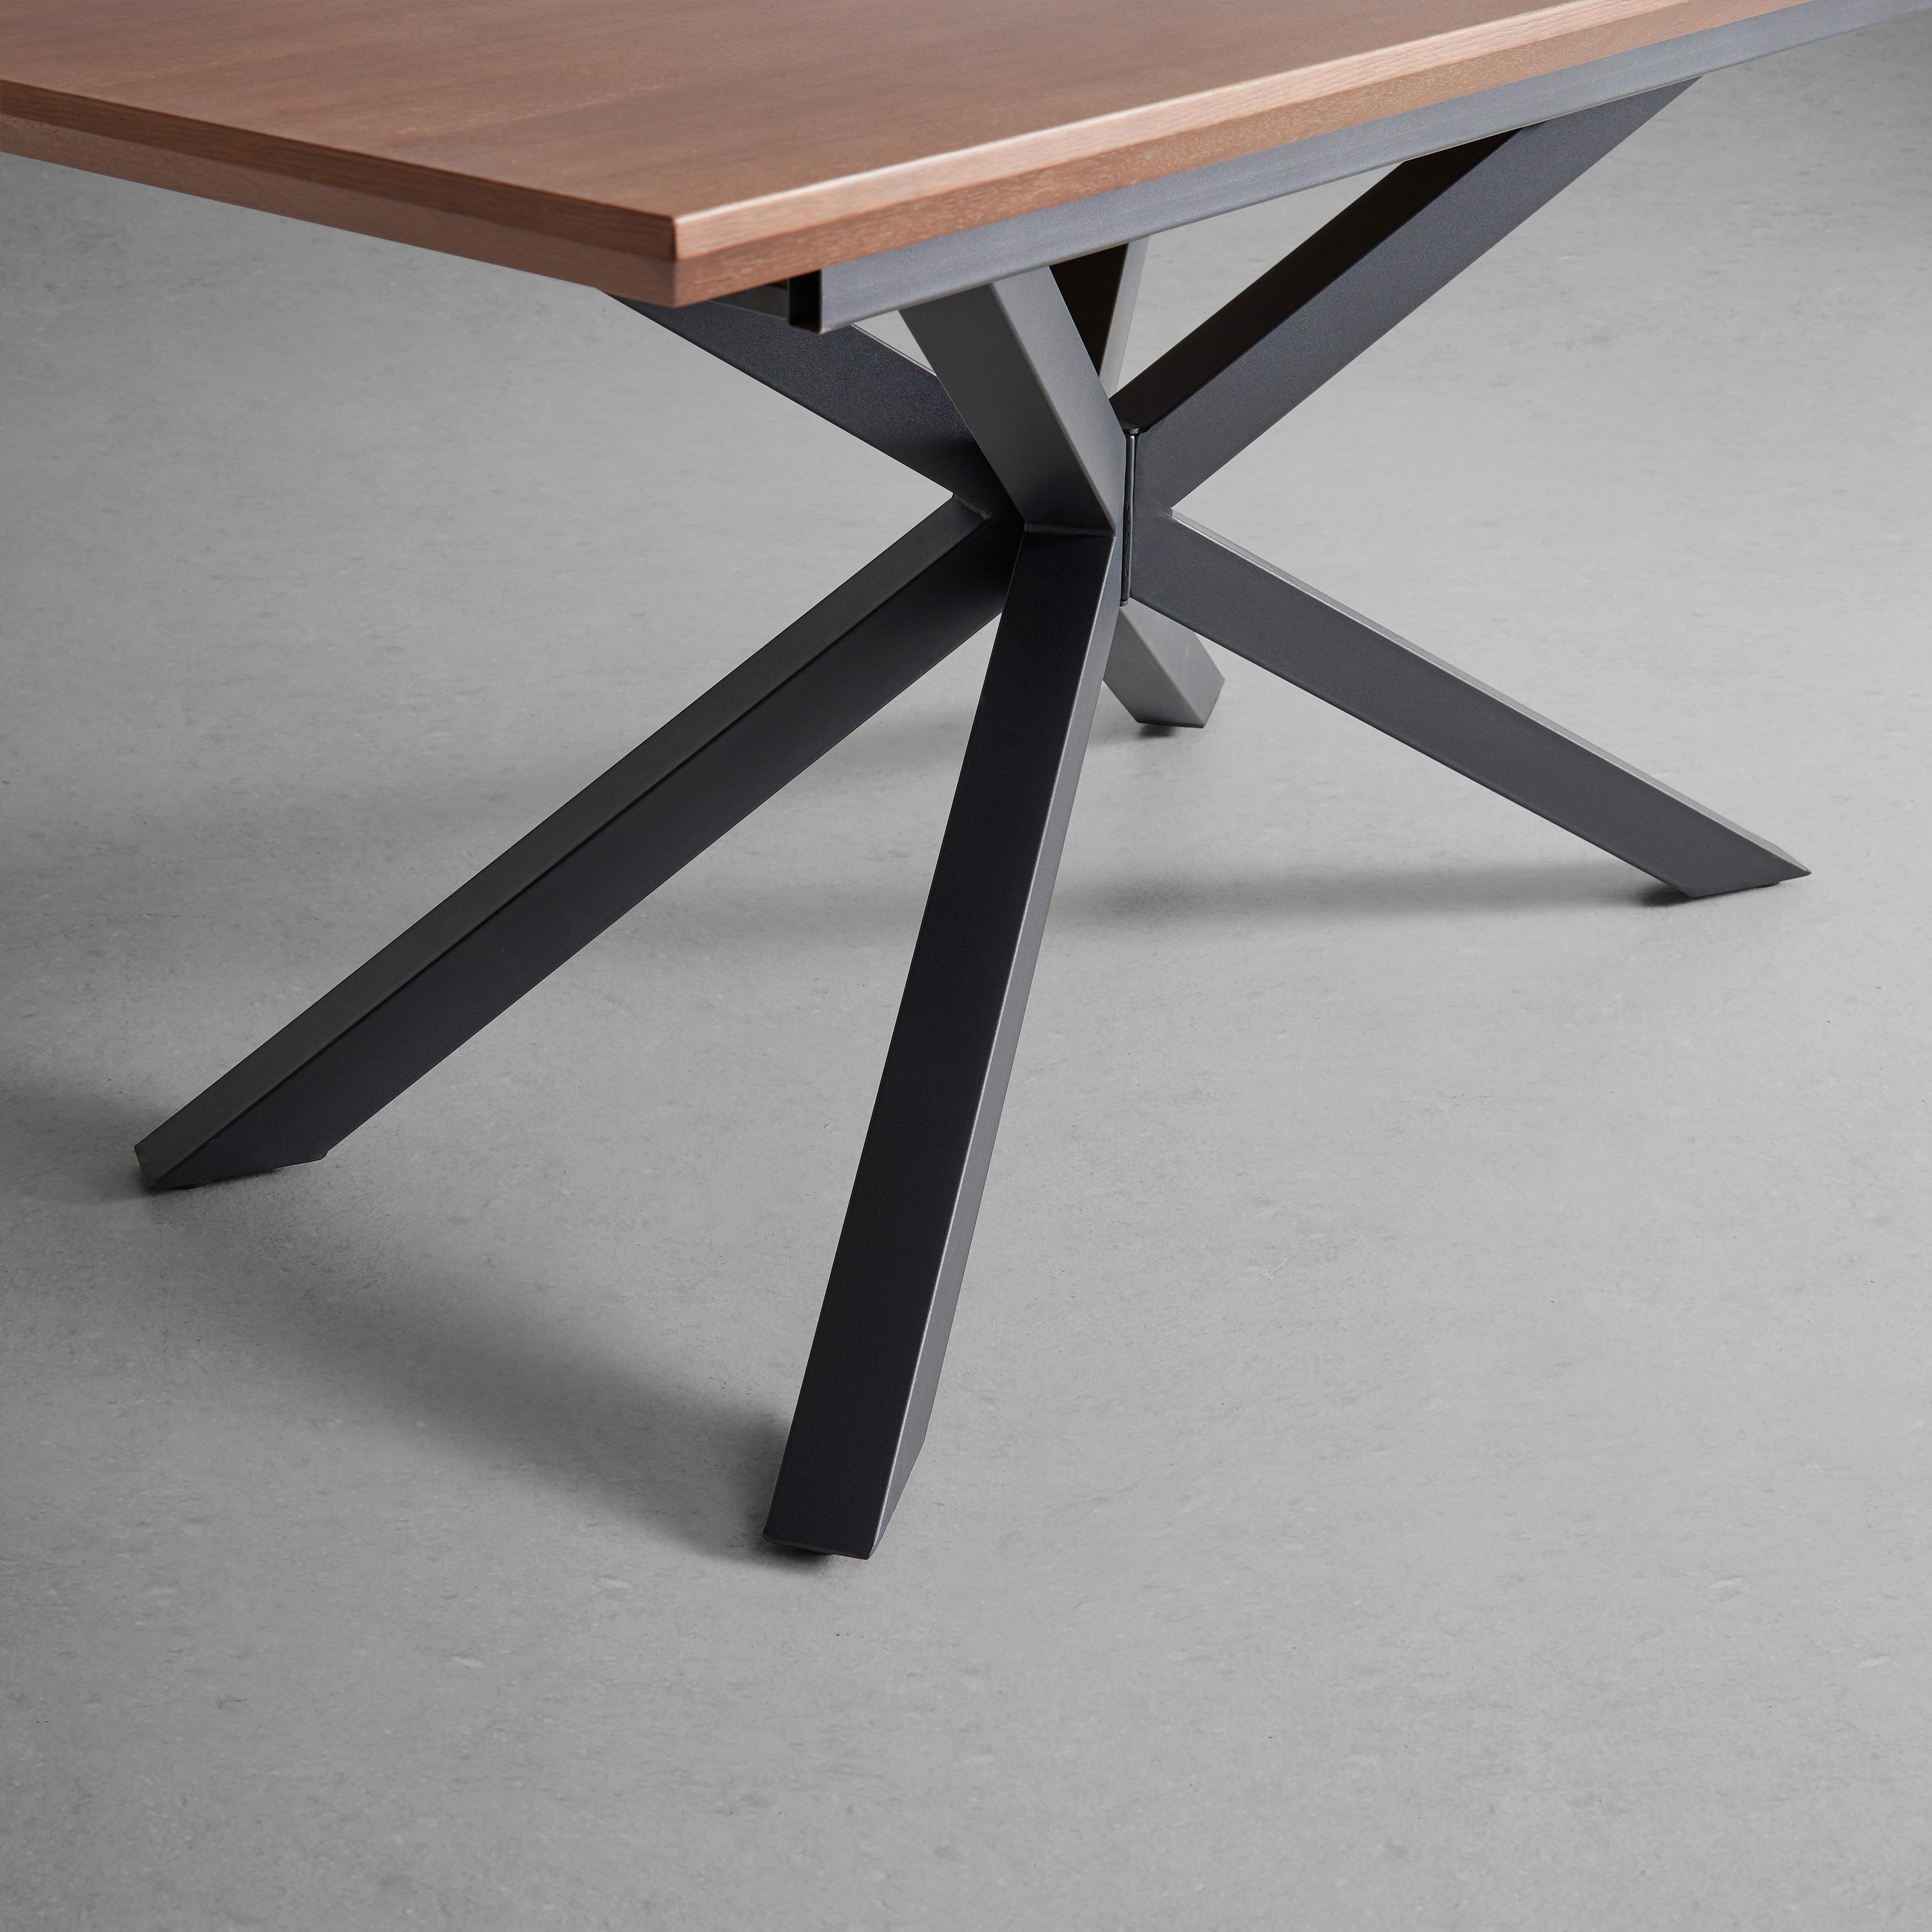 Jídelní Stůl S Rozkladem Fulvio 160-200 Cm - černá/barvy vlašských ořechů, Moderní, kov/dřevo (160-200/90/77cm) - P & B